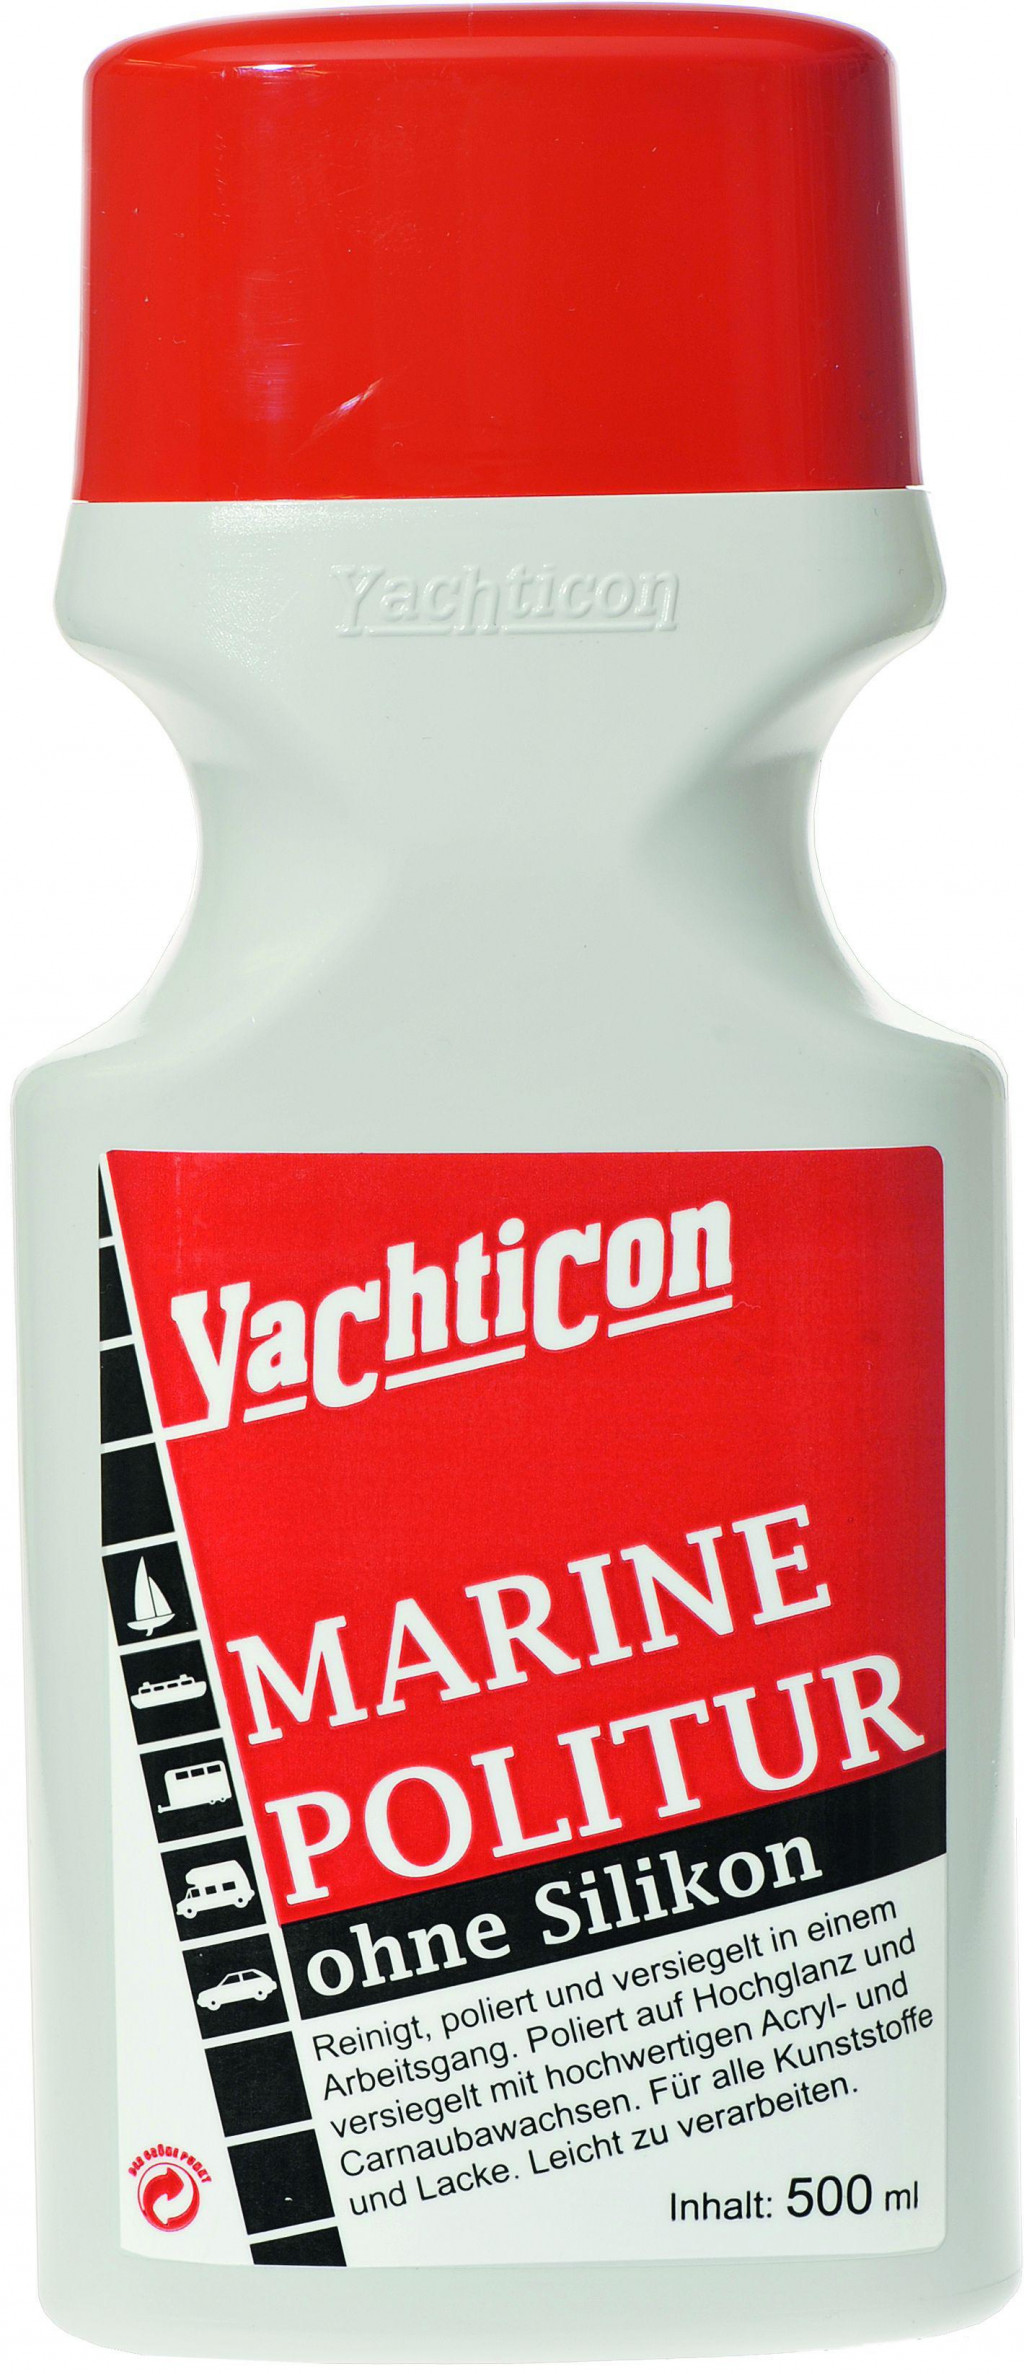 &lt;p&gt;Yachticon univerzalni lak Marine Politur&lt;/p&gt;